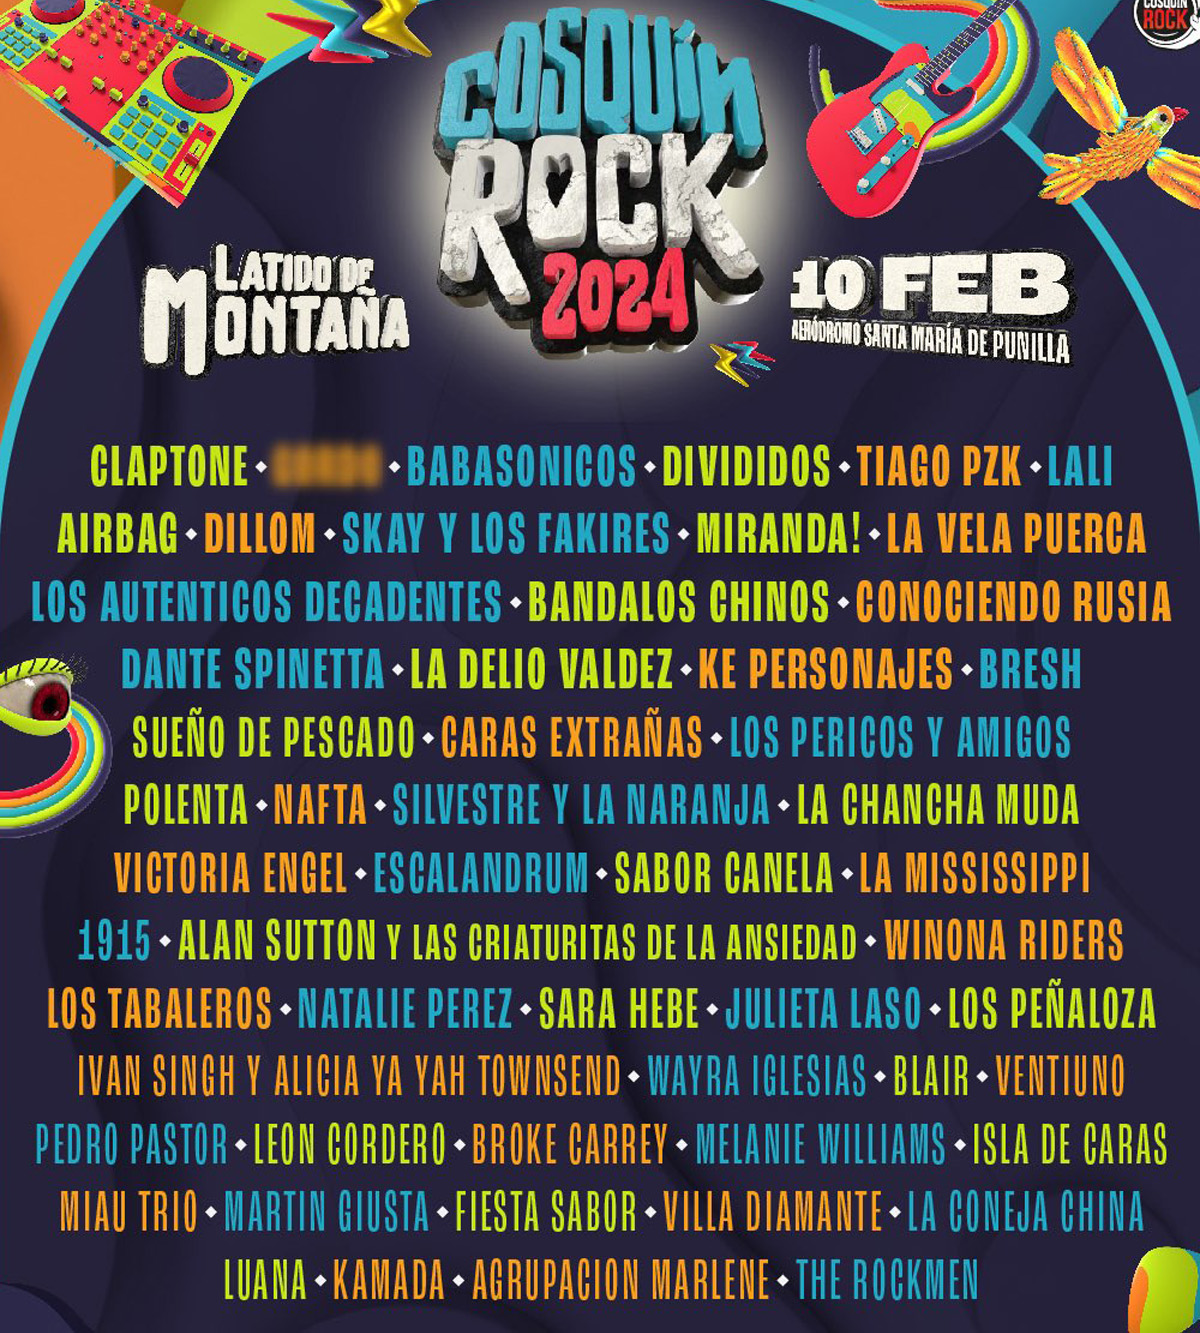 Grilla Cosquín Rock 2024 - Line Up Día sábado 10